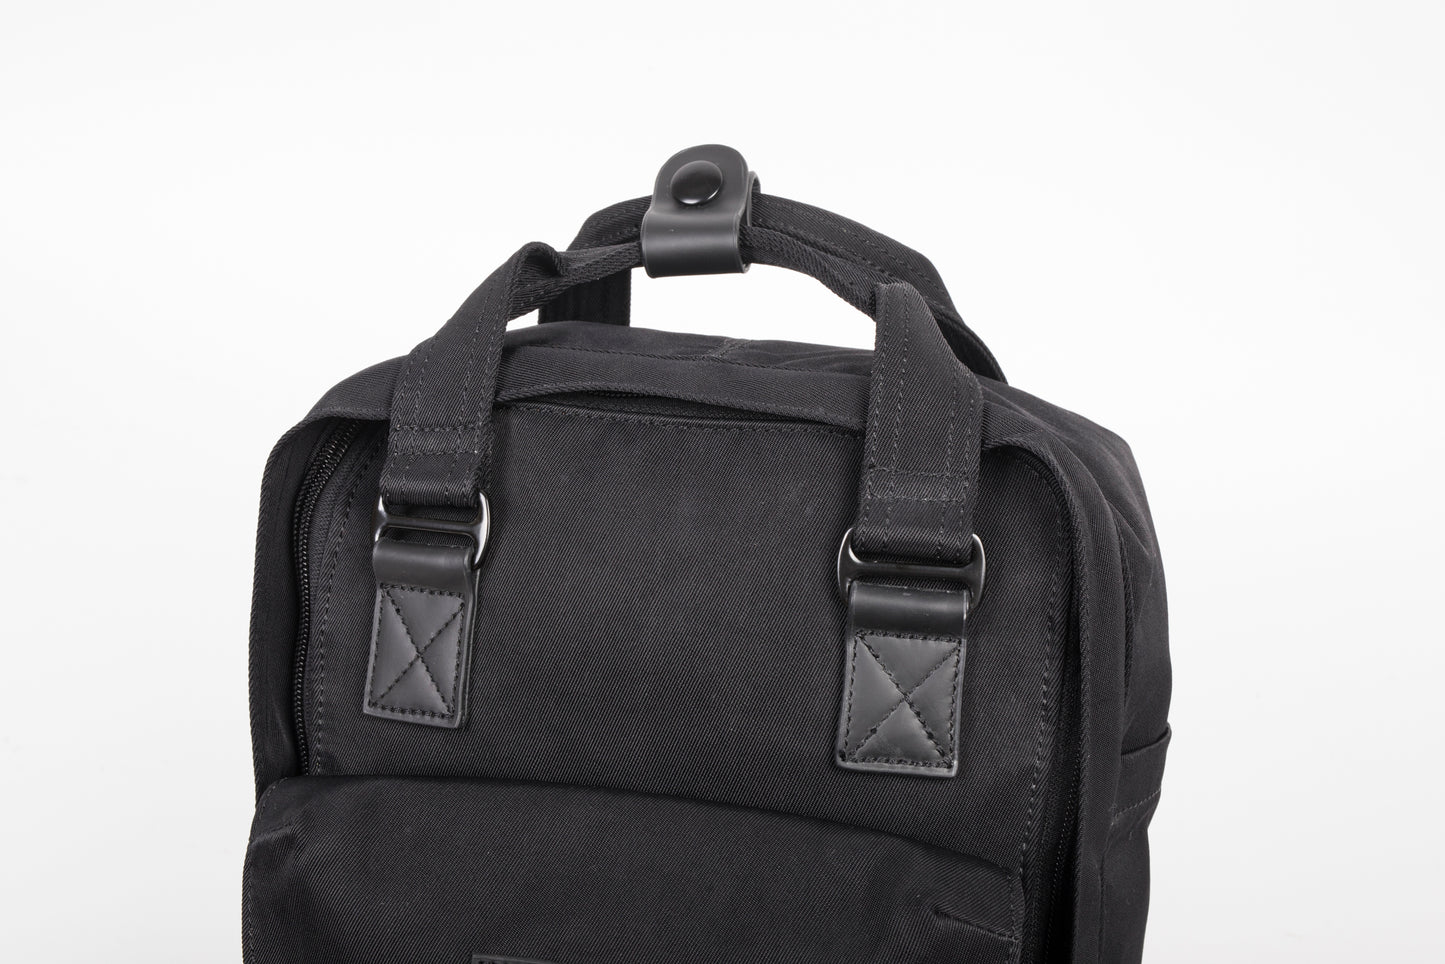 Macaroon Black Series Backpack